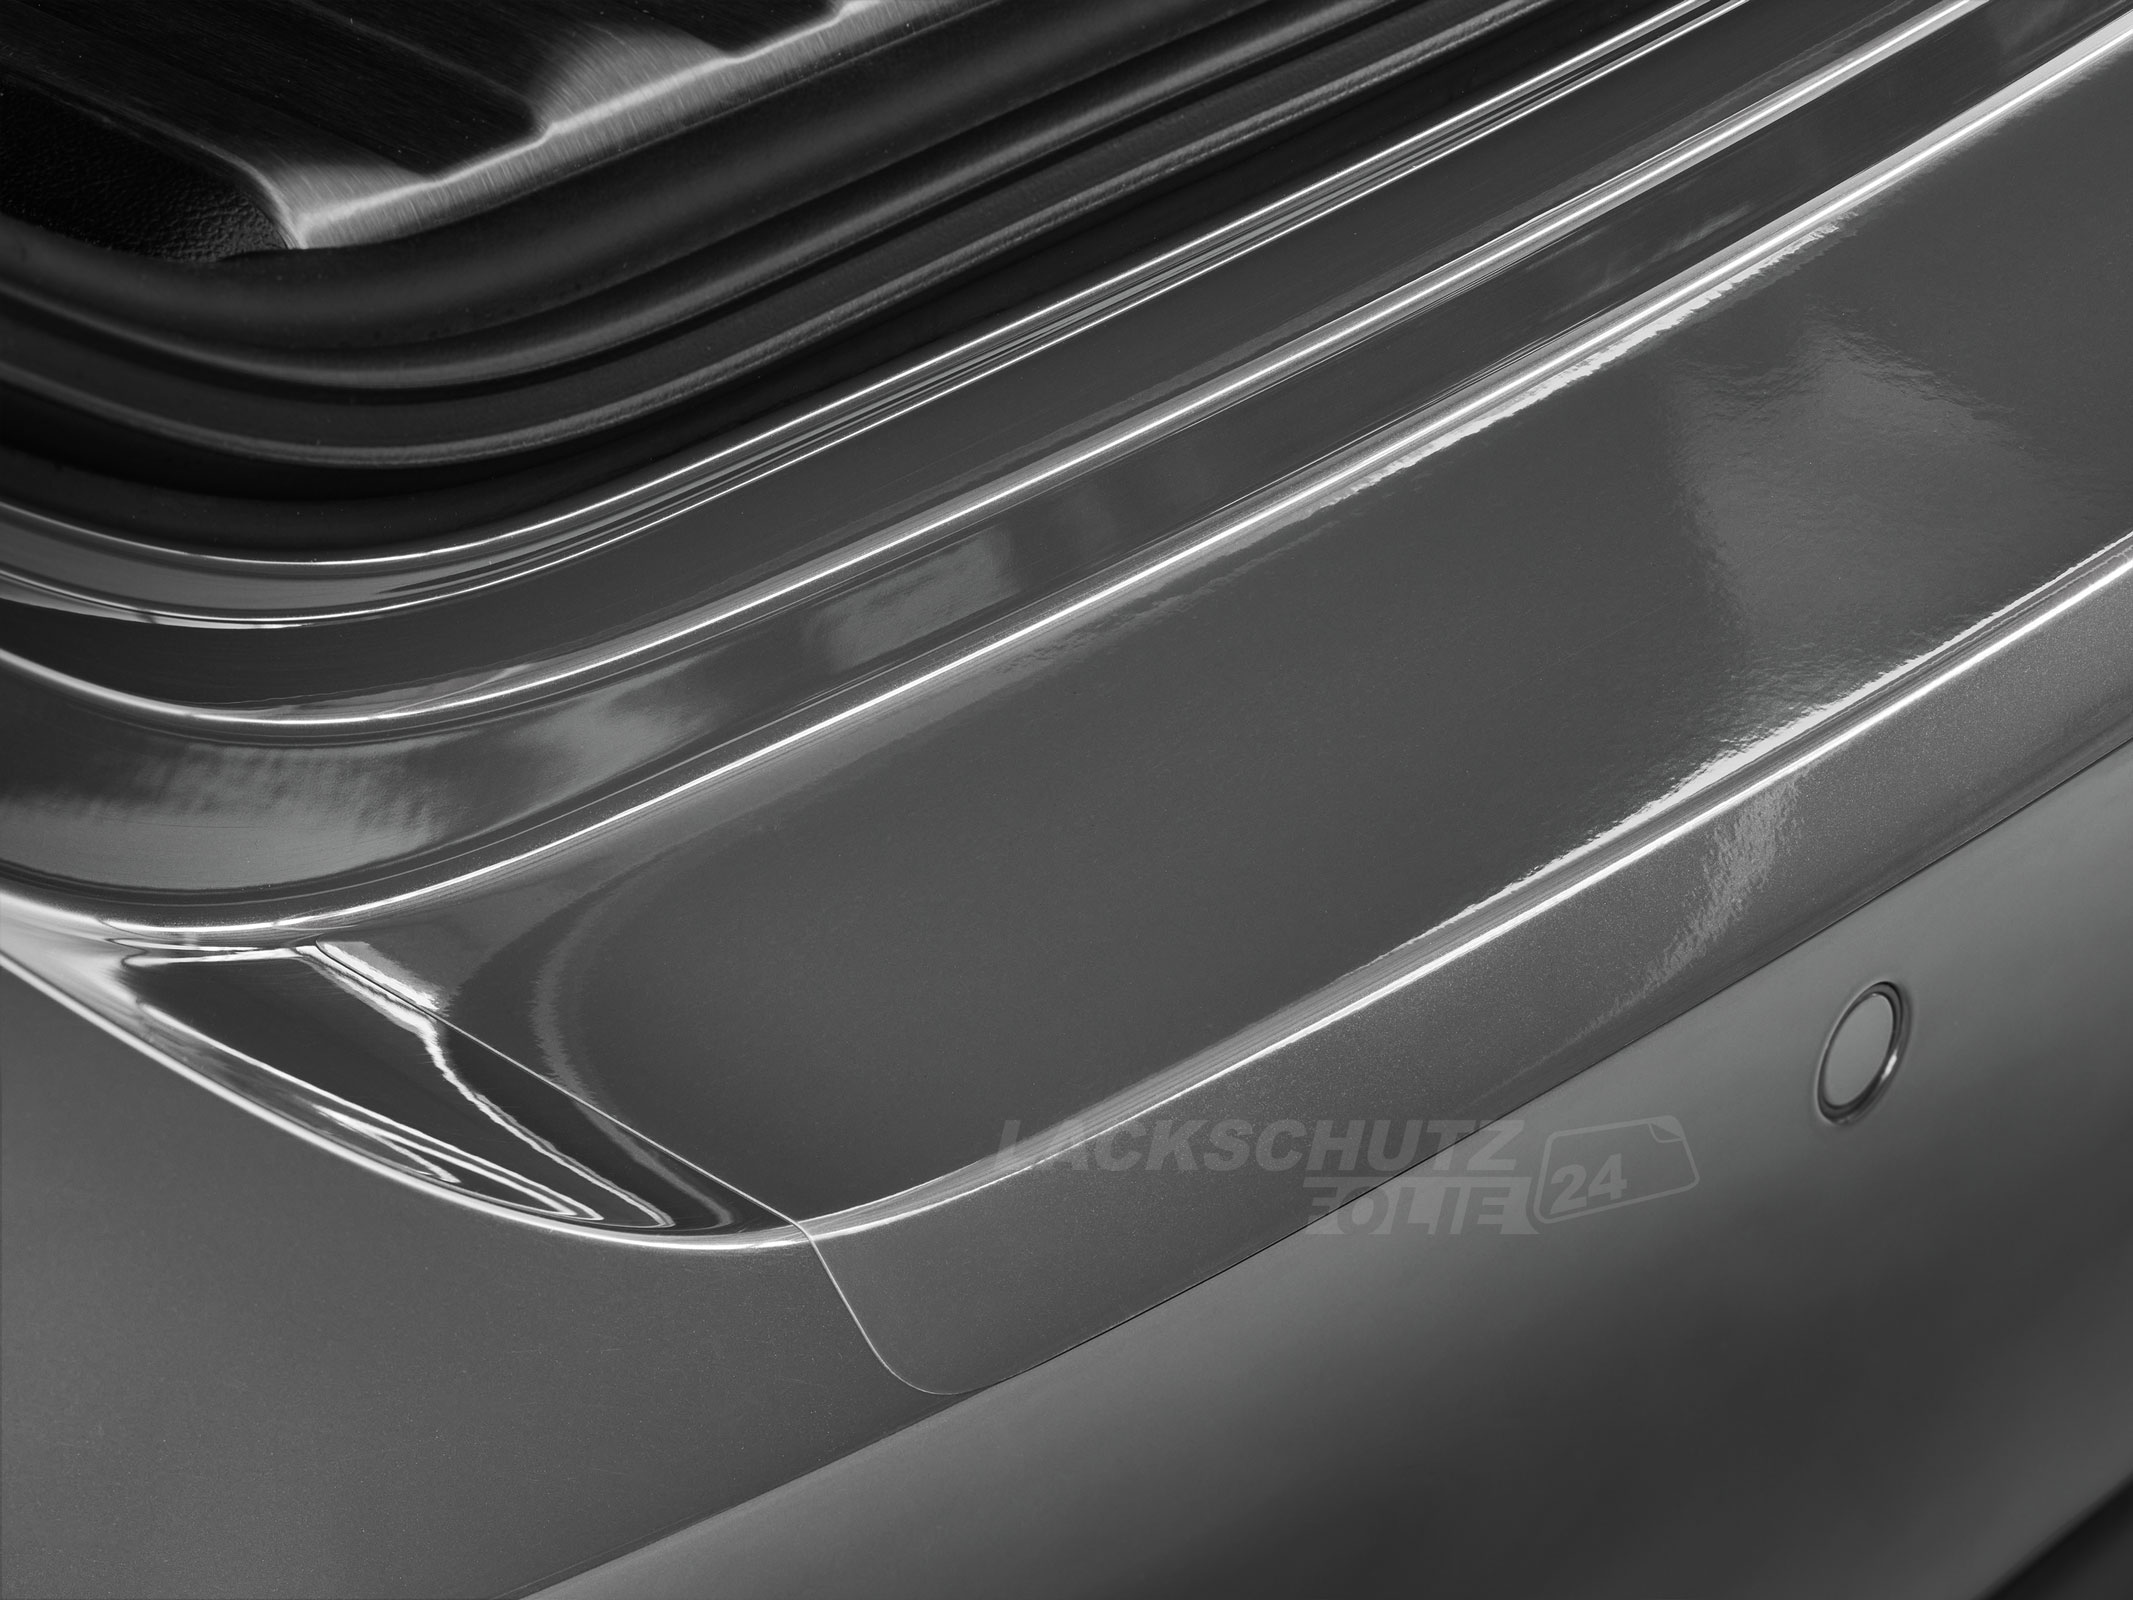 Ladekantenschutzfolie - Transparent Glatt Hochglänzend 240 µm stark für Daewoo Rezzo 2000-2009